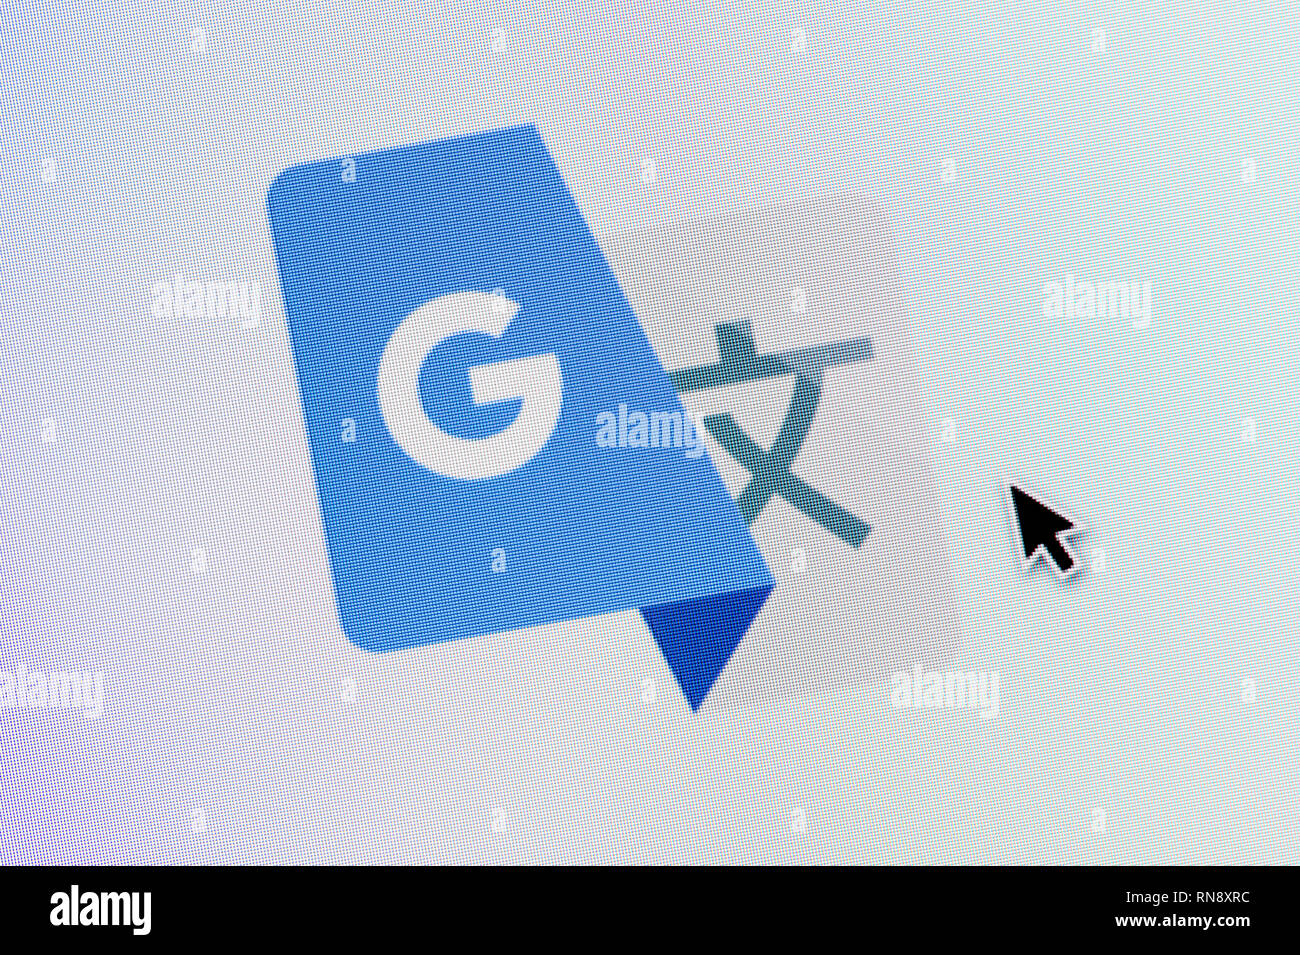 Le logo de Google Translate est vu sur l'écran d'un ordinateur avec une souris (curseur utilisation éditoriale uniquement) Banque D'Images